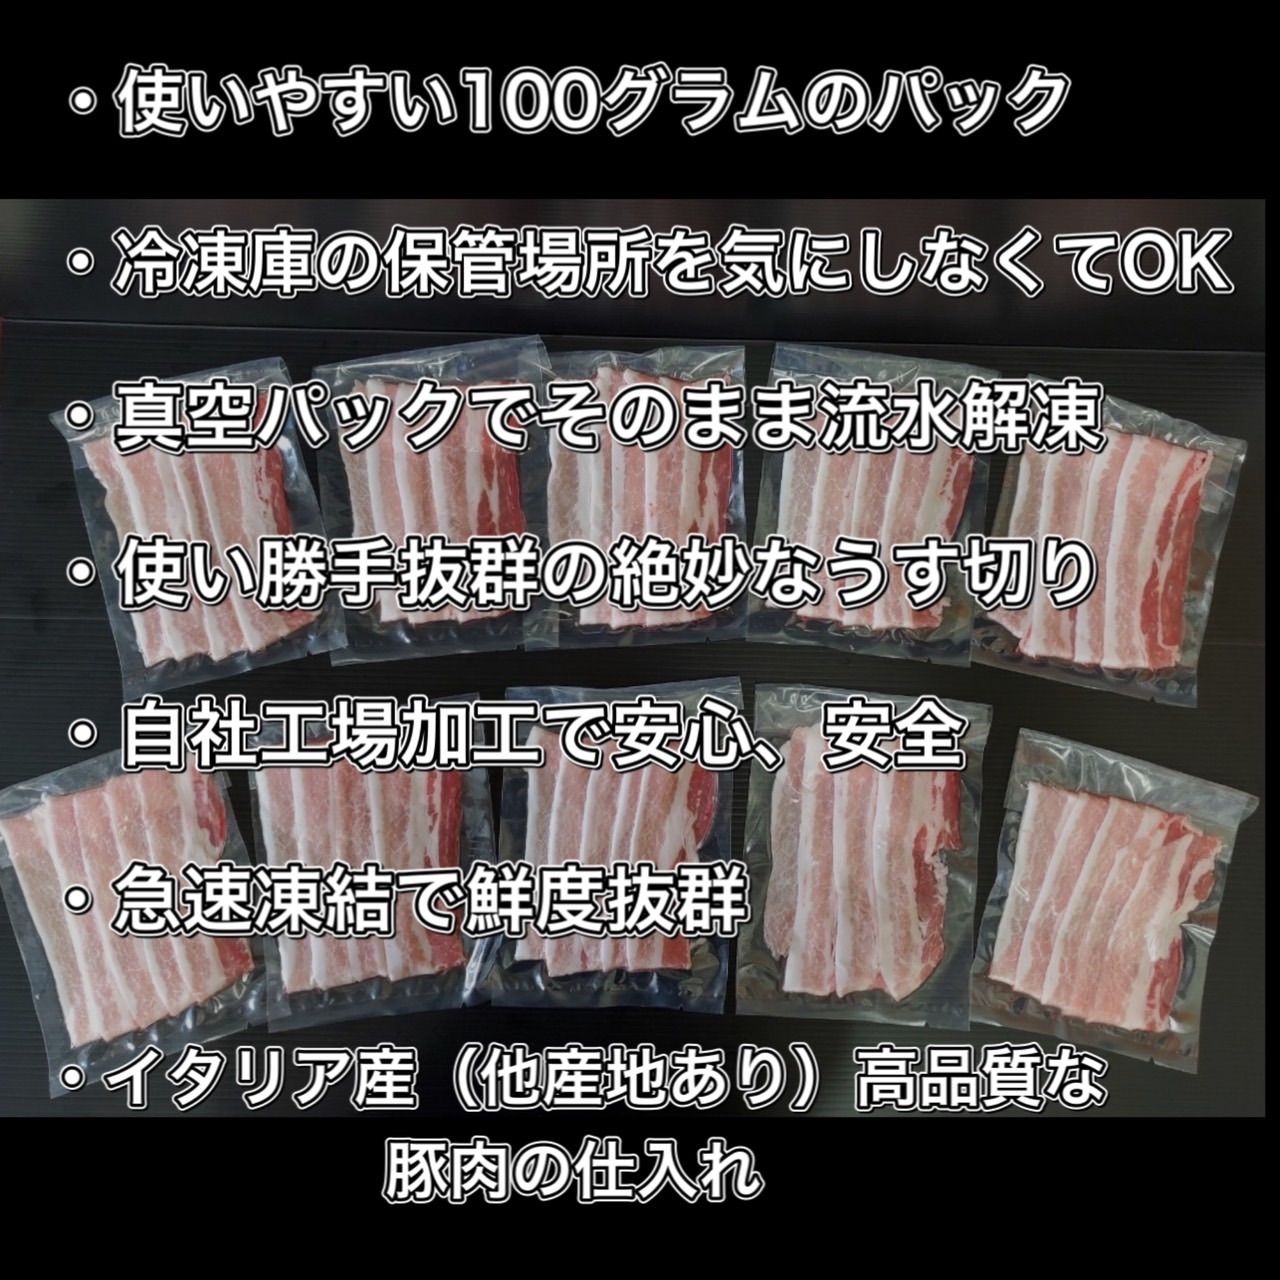 【家庭応援】 豚バラうす切り1kg✨超小分けの100グラム❗️高品質輸入産地-2